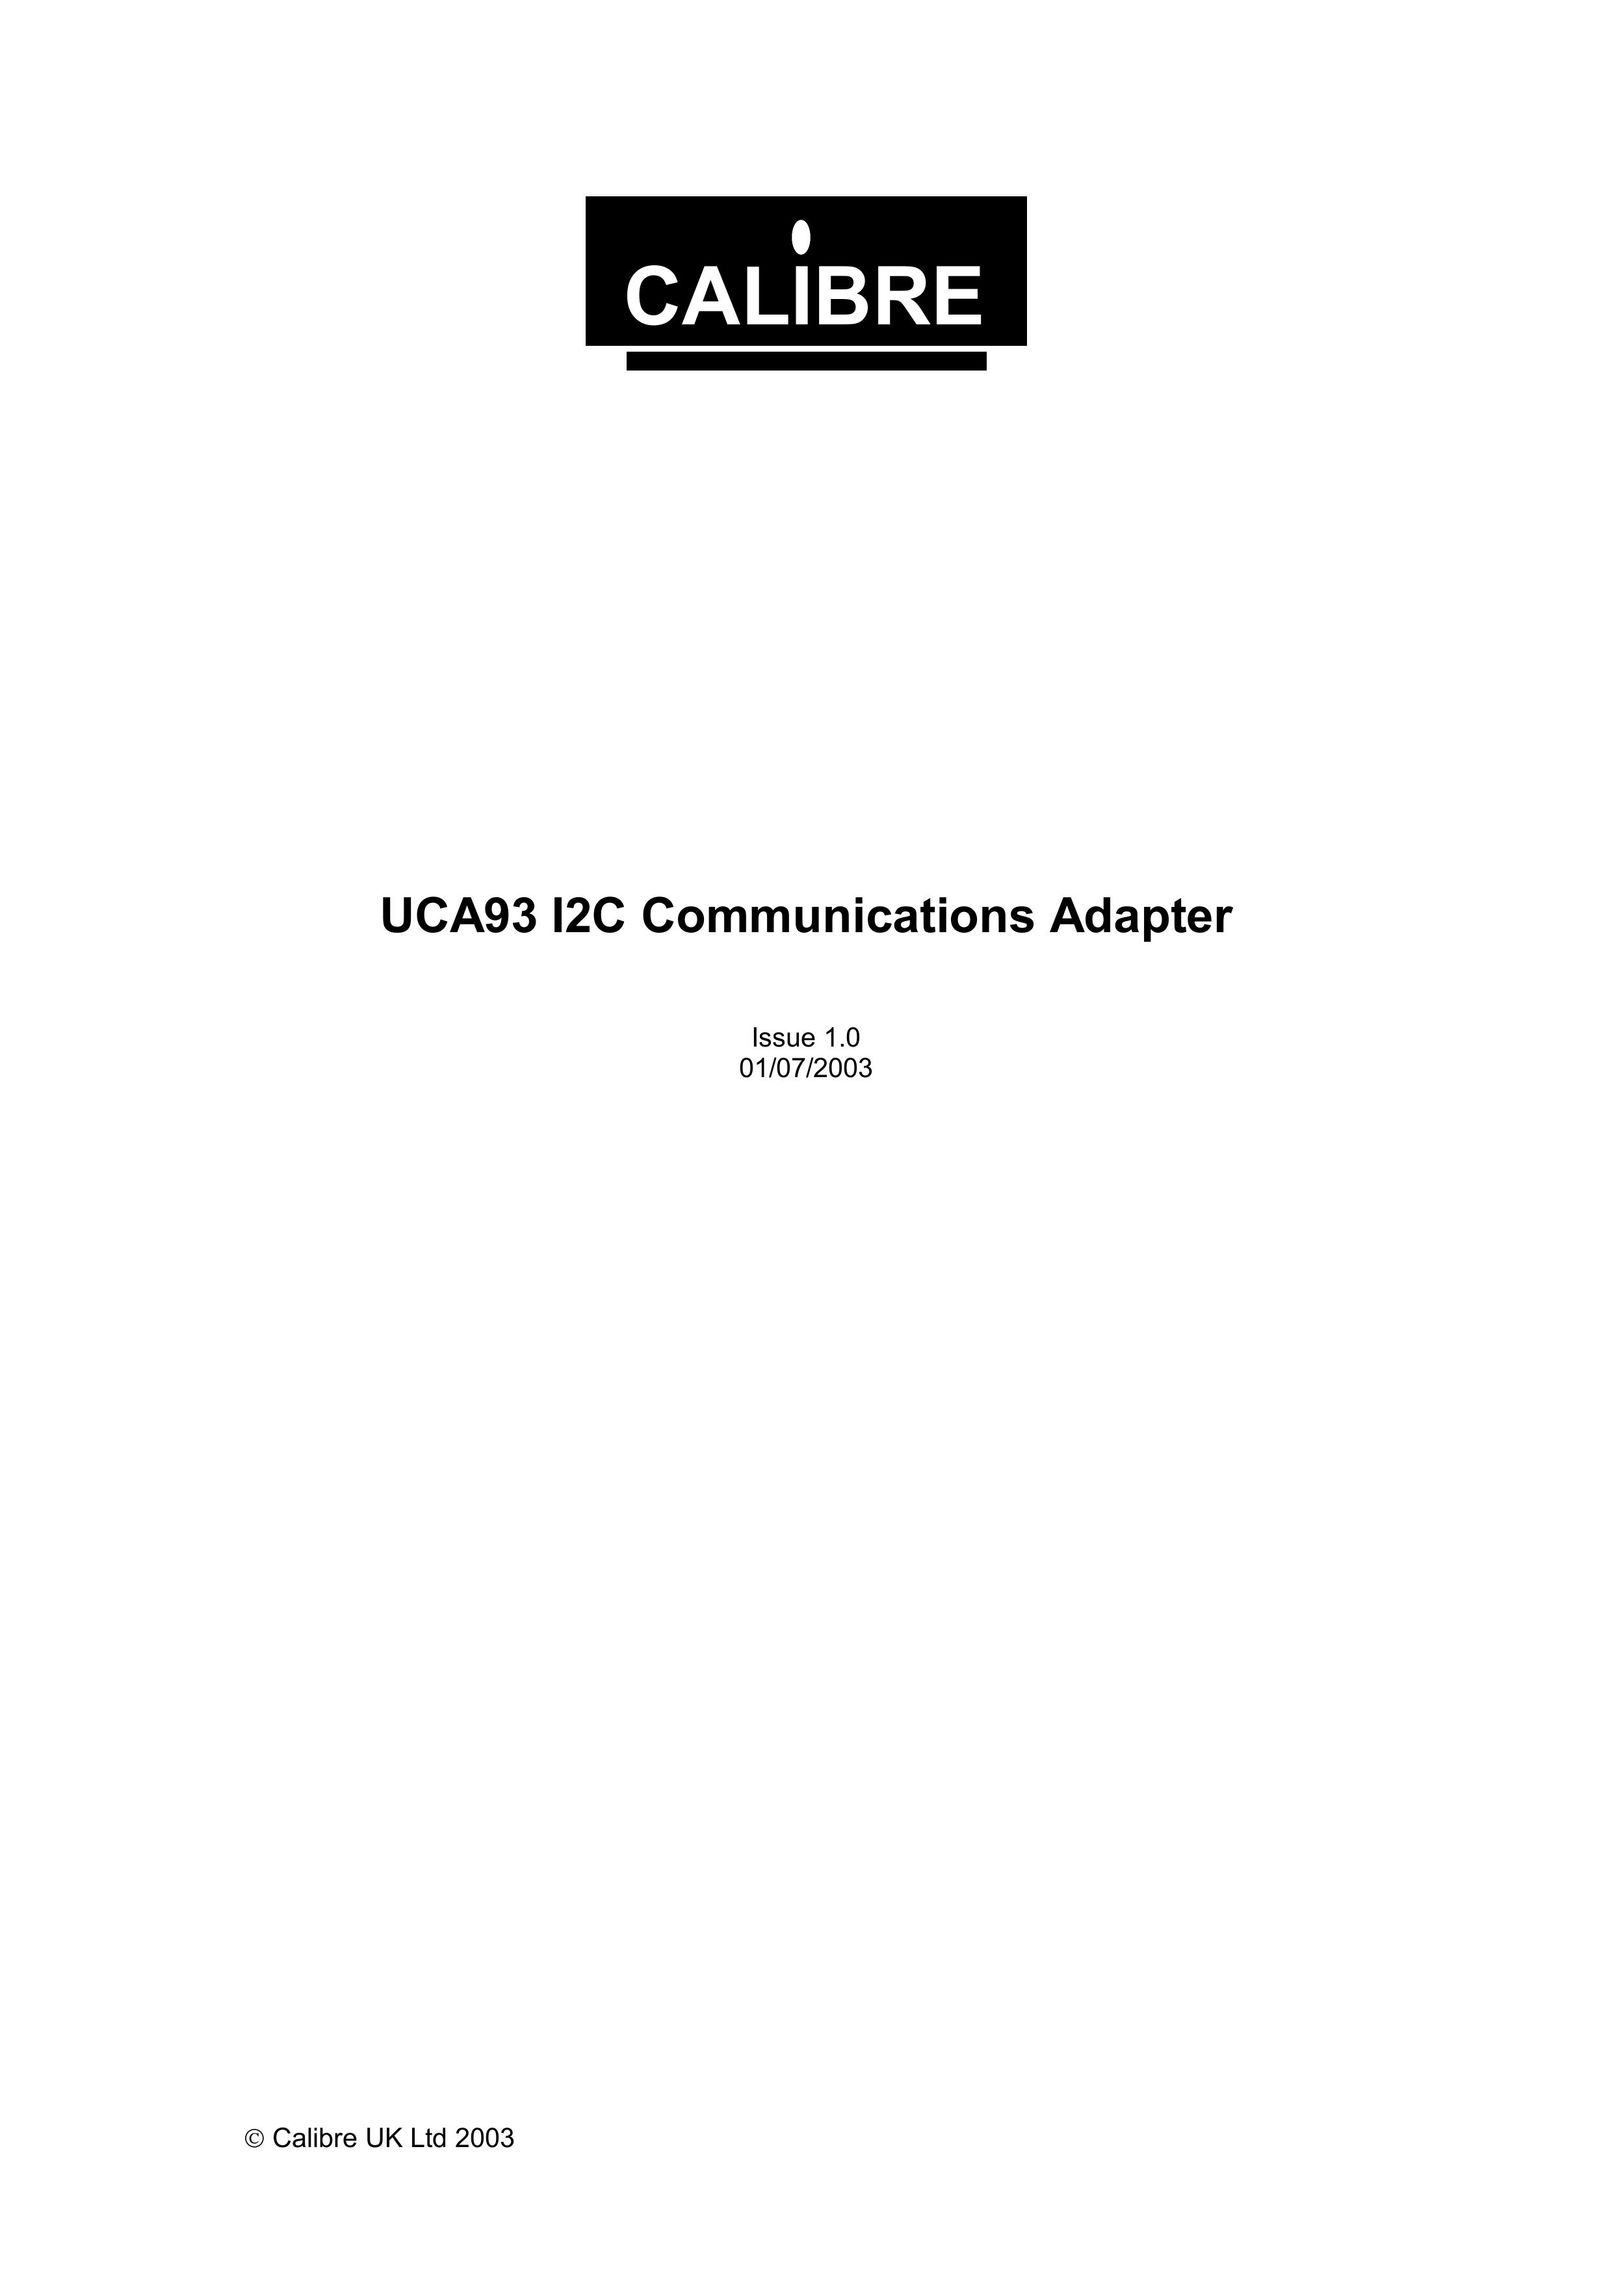 Calibre UK UCA93 Network Card User Manual